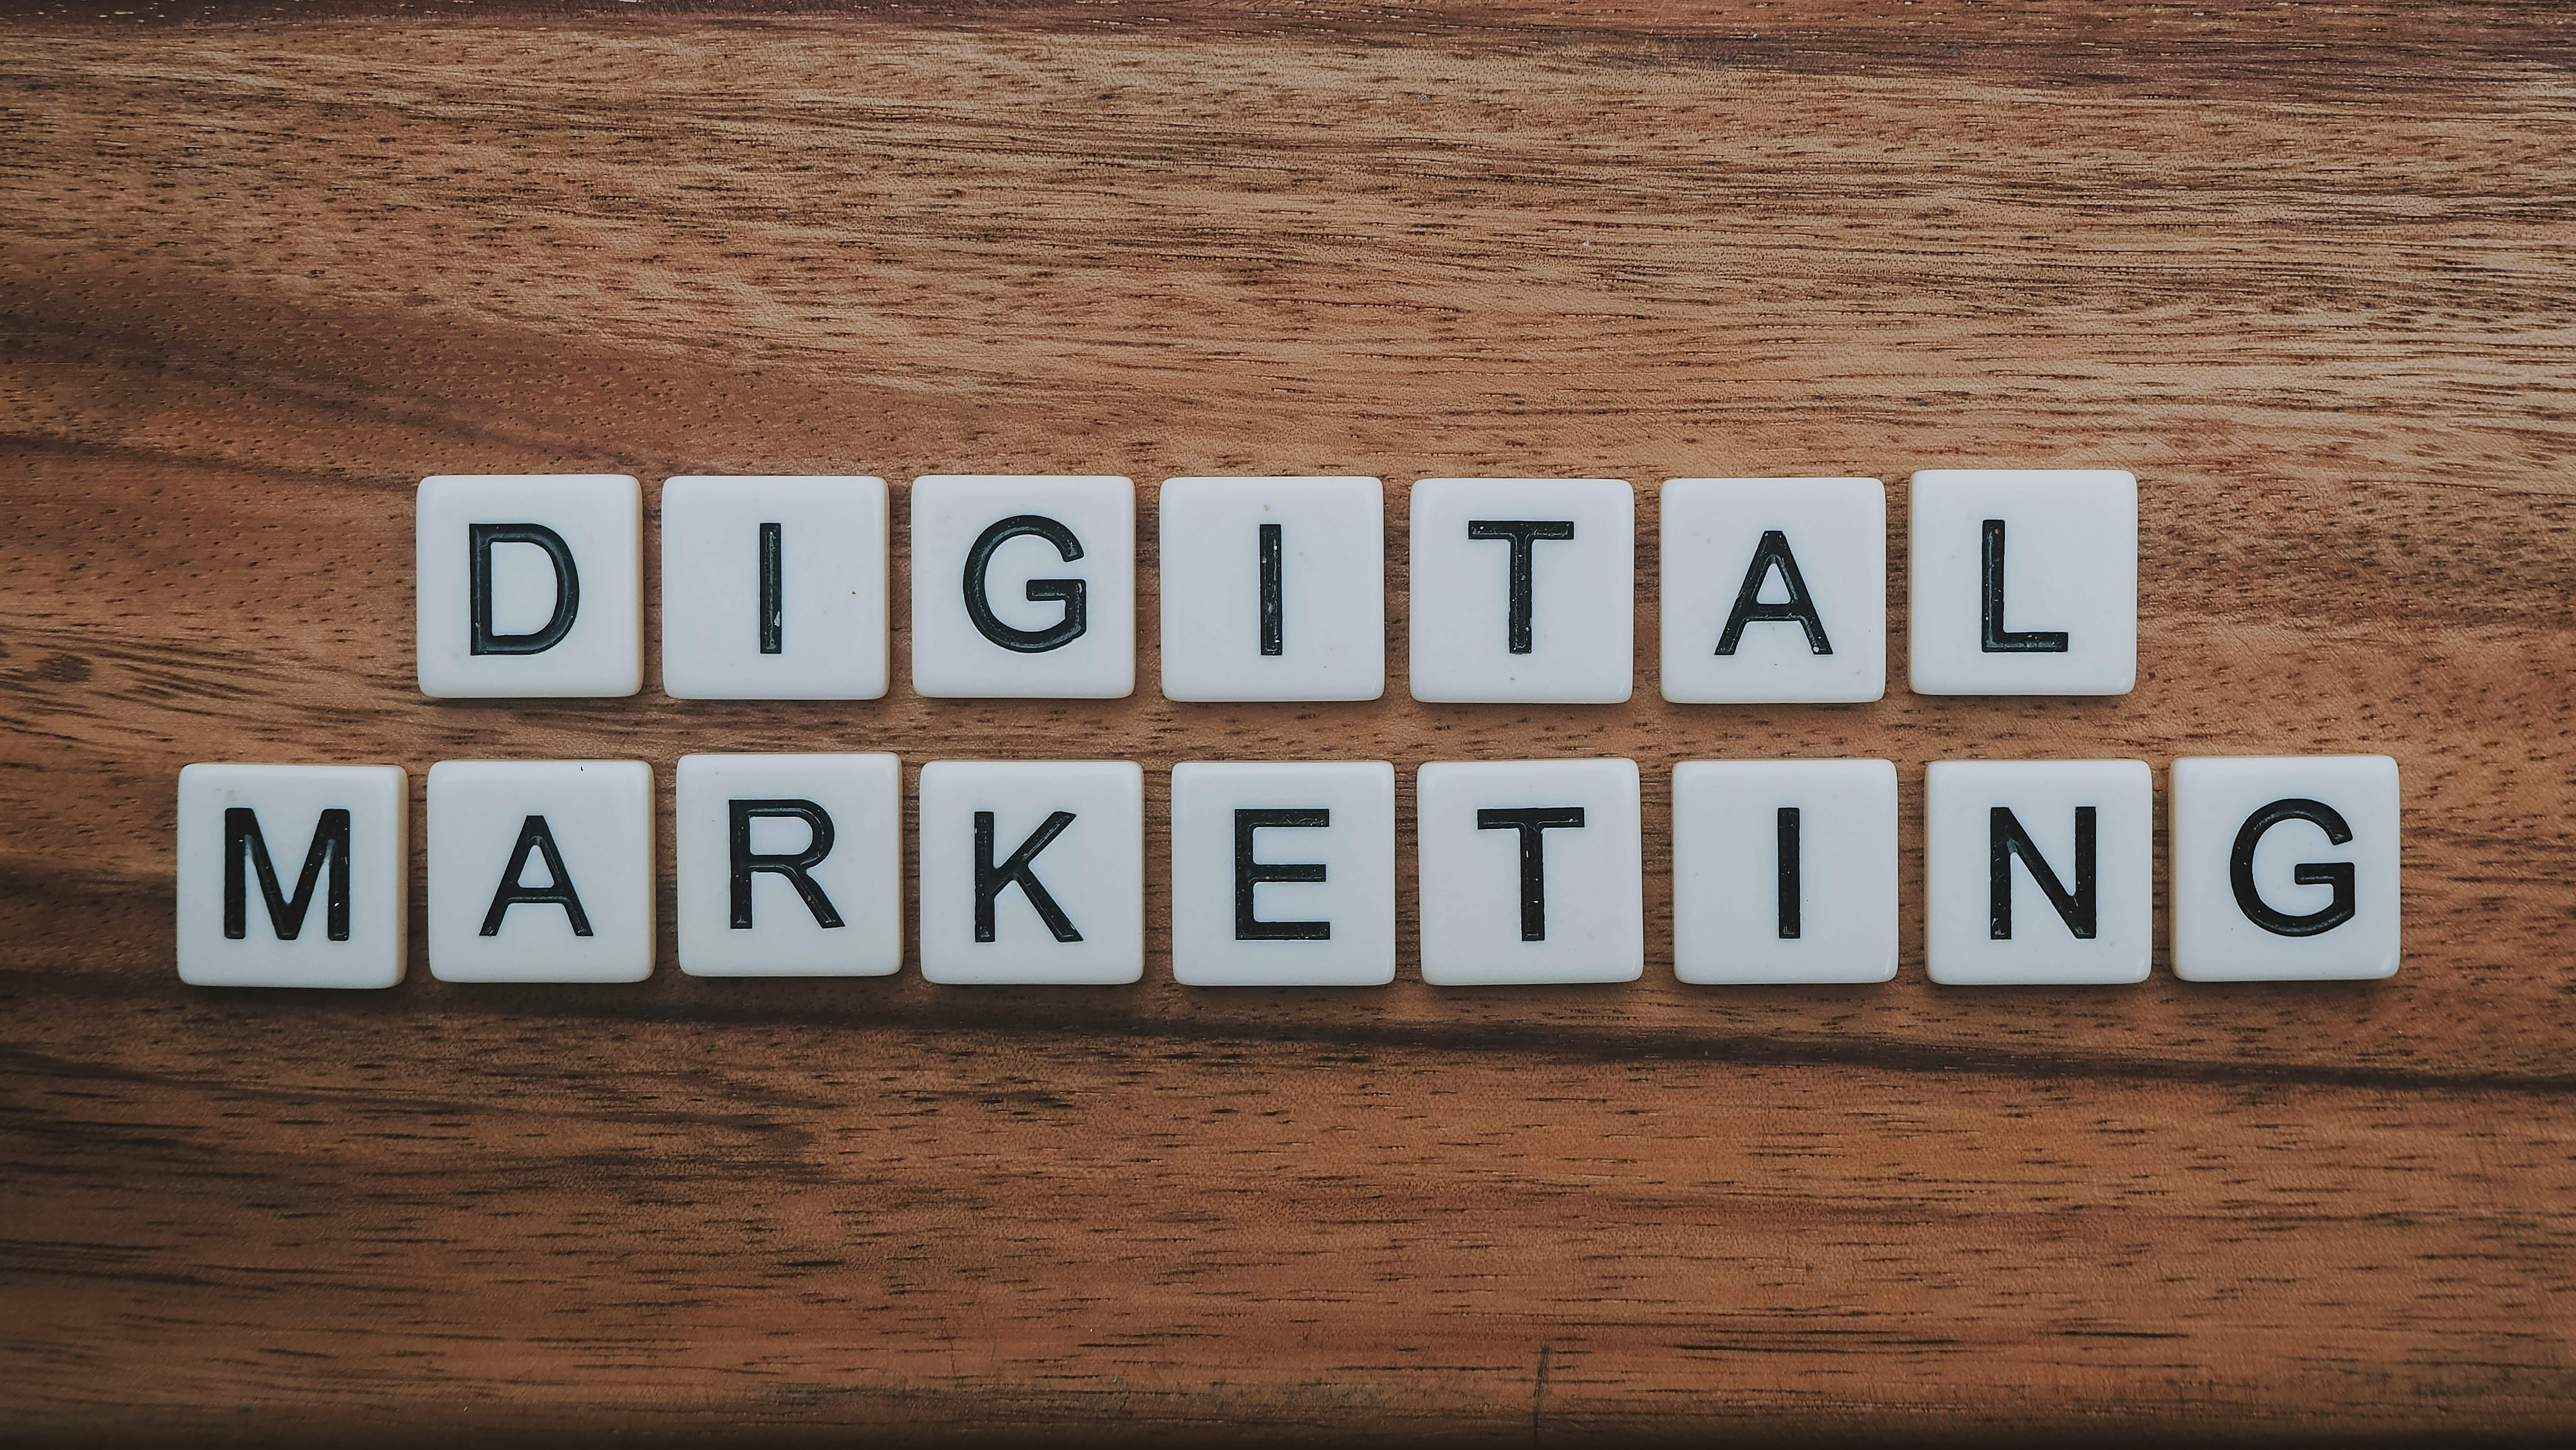 Digitales Marketing